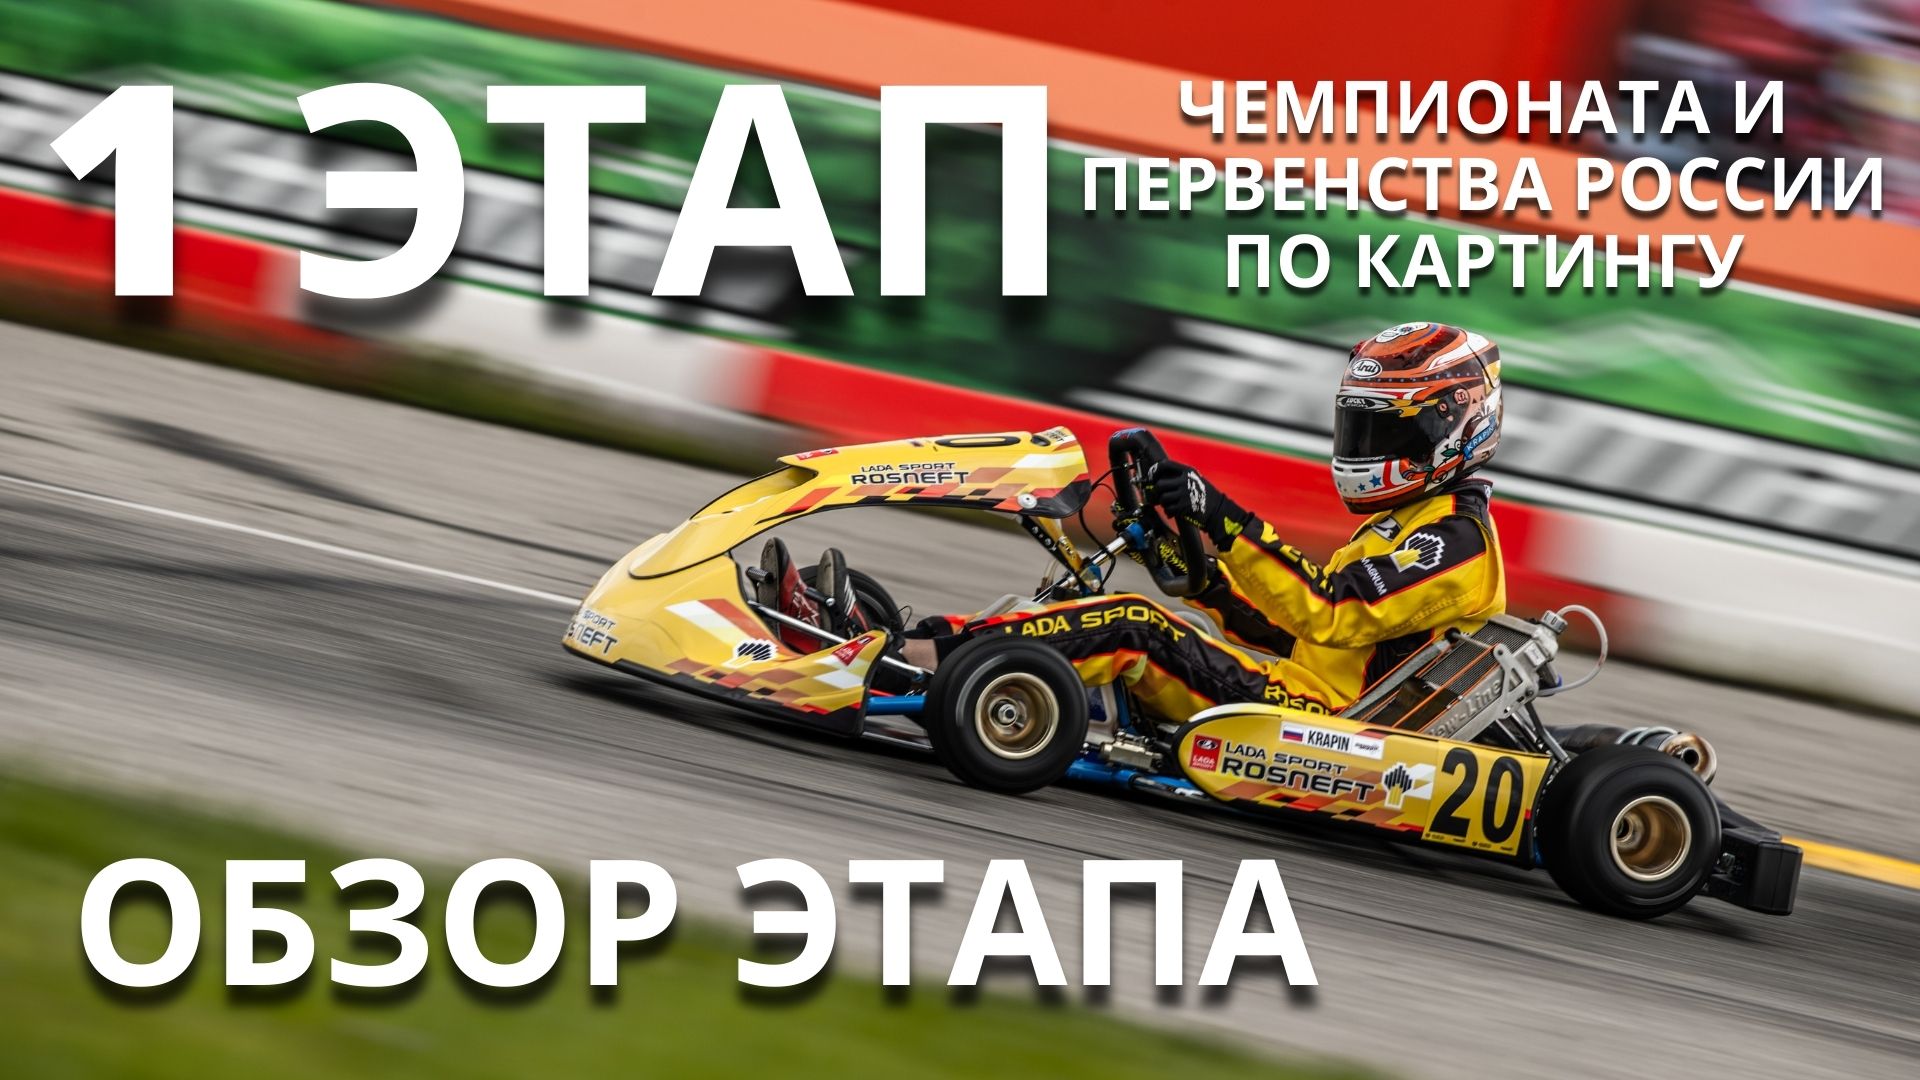 LADA Sport ROSNEFT в Грозном: обновление картинговой команды, Макс Туриев и защита титула